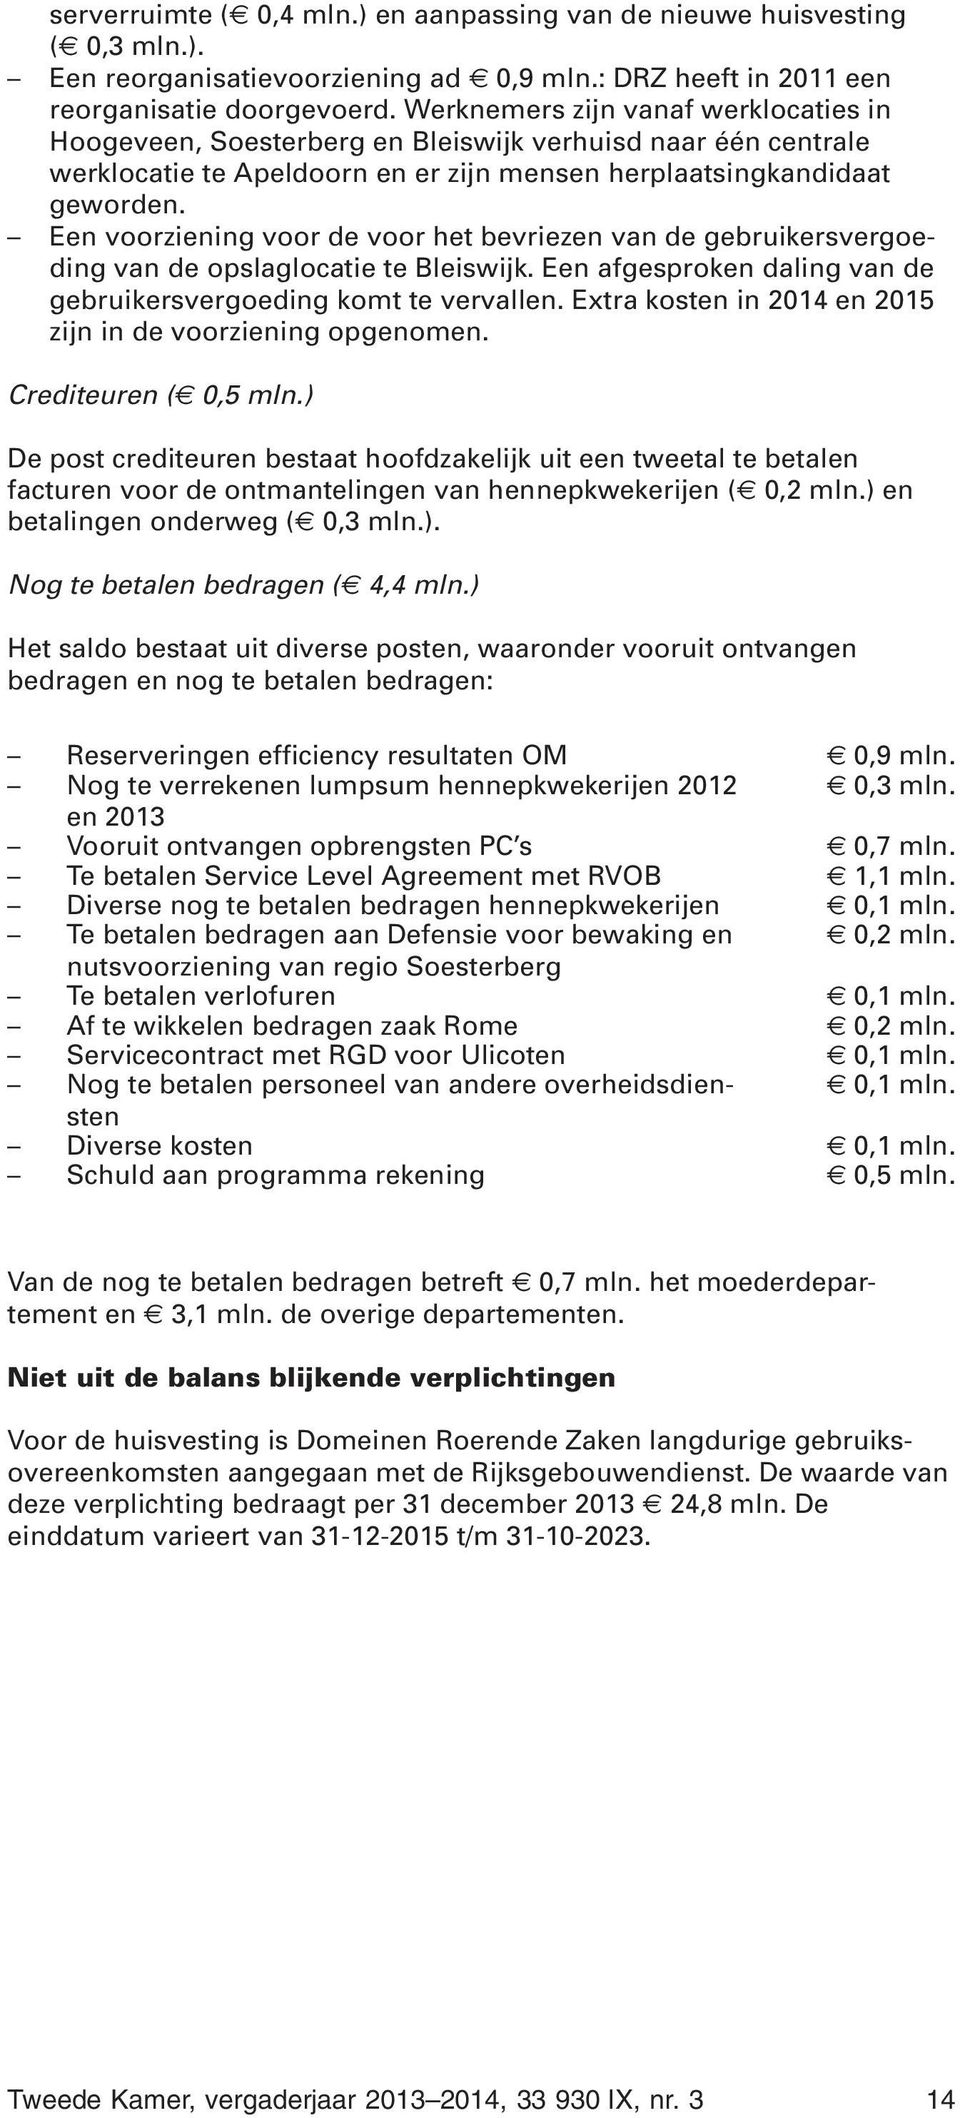 Een voorziening voor de voor het bevriezen van de gebruikersvergoeding van de opslaglocatie te Bleiswijk. Een afgesproken daling van de gebruikersvergoeding komt te vervallen.